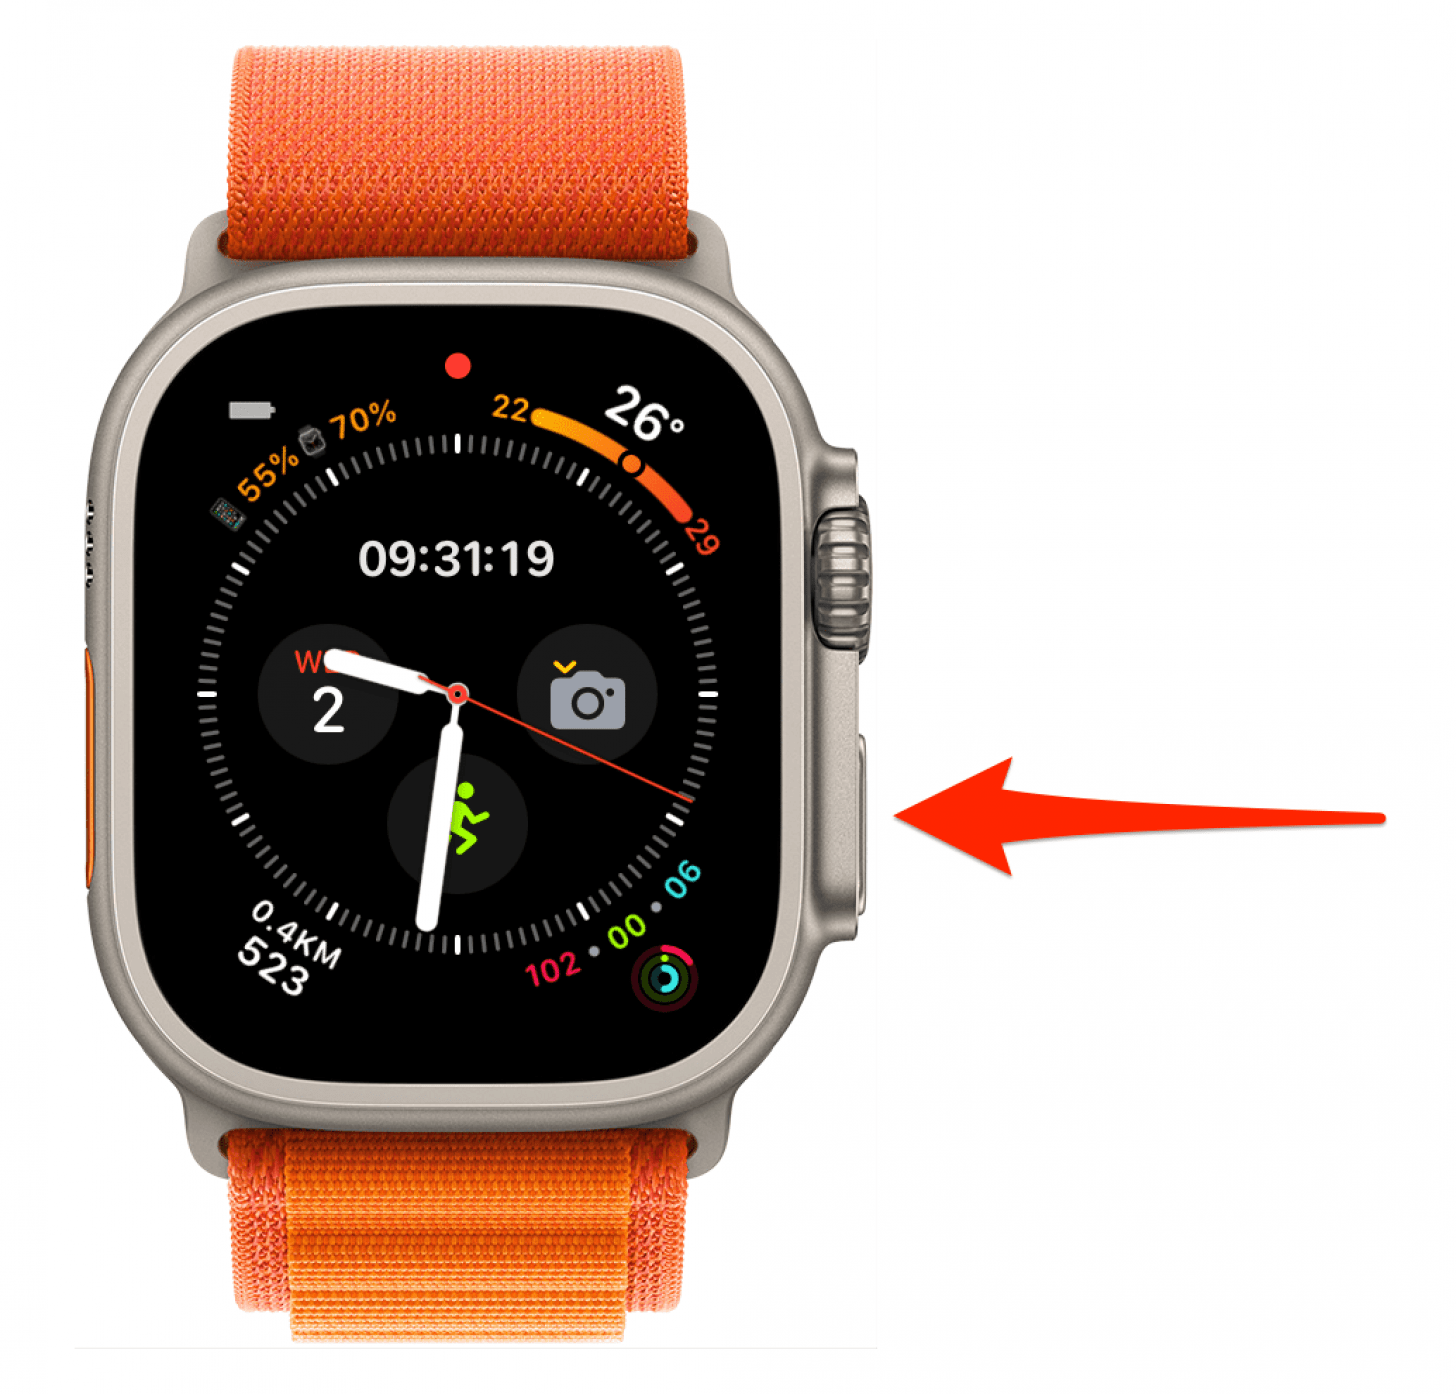 Réinitialisez votre Apple Watch en appuyant longuement sur le bouton latéral jusqu'à ce que le menu avec le bouton d'arrêt apparaisse.